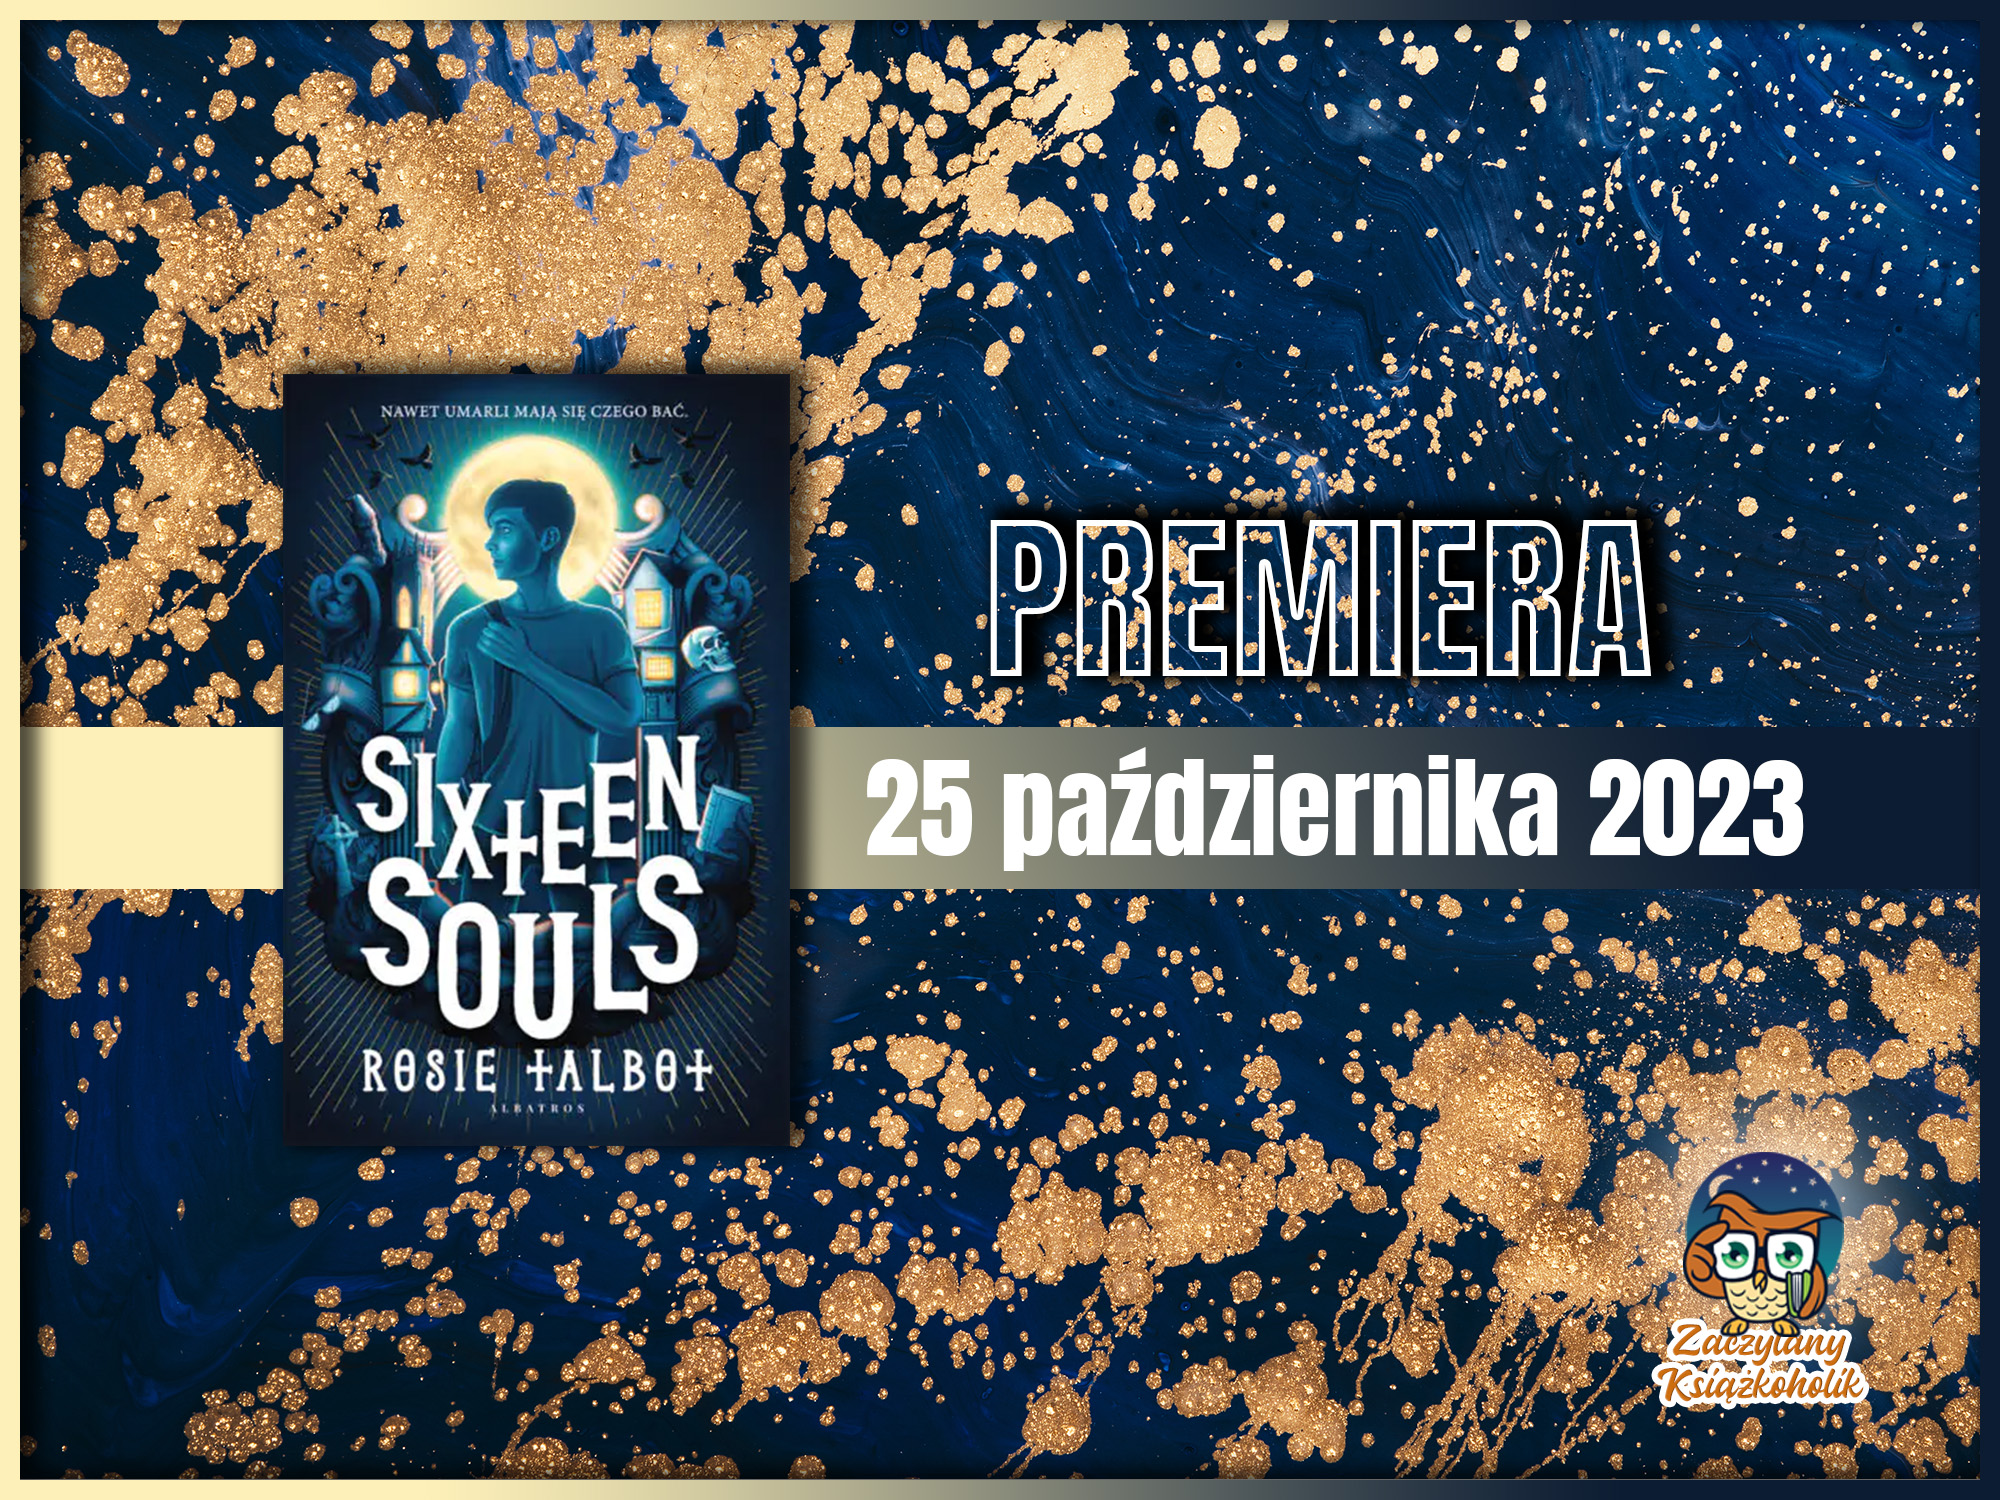 Sixteen Souls - Rosie Talbot - zaczytanyksiazkoholik.pl